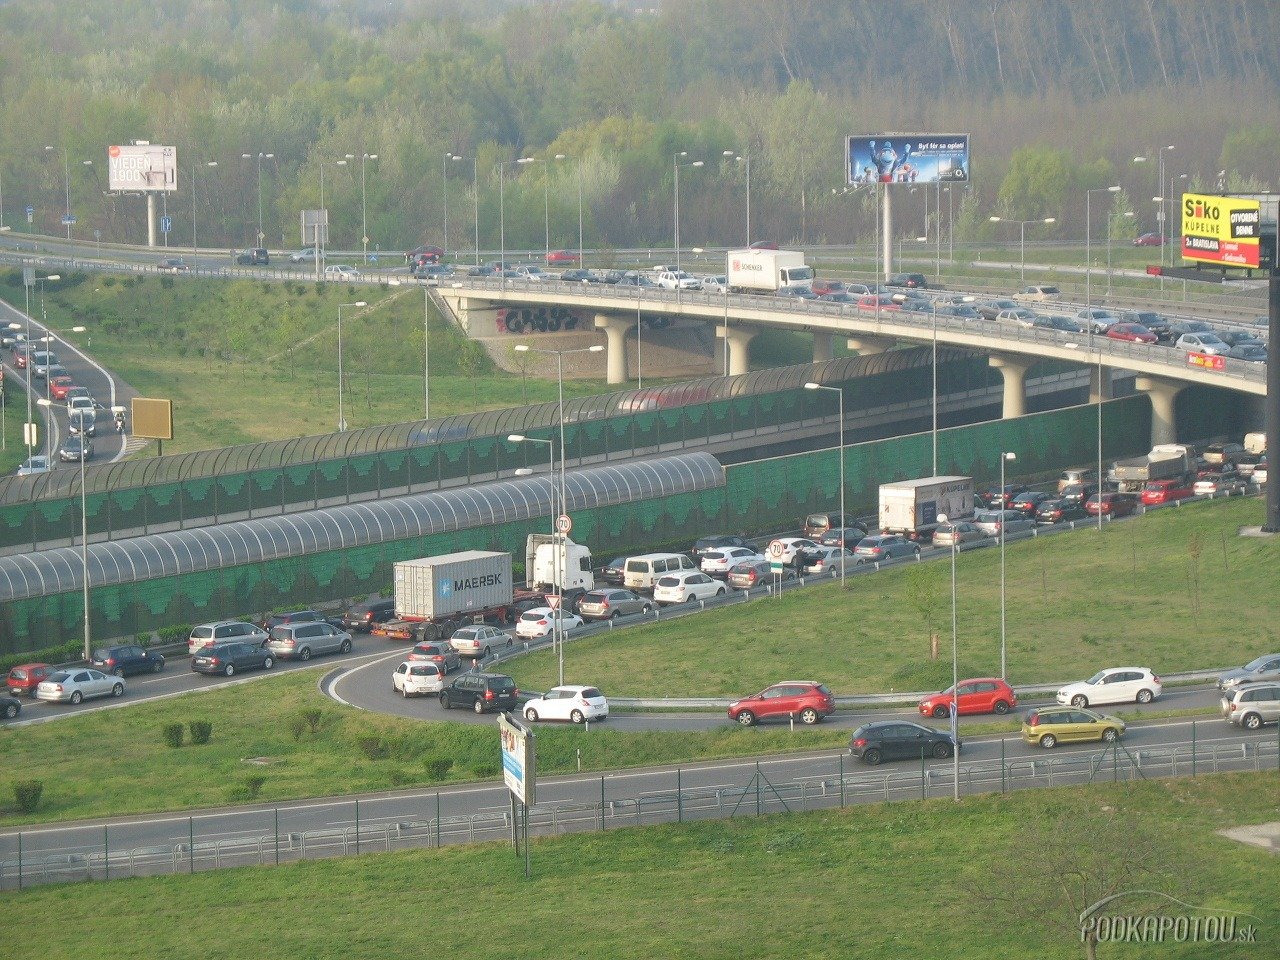 Aktuálne dopravné informácie - v Bratislave neprejdete cez most Lafranconi - foto ...1280 x 960